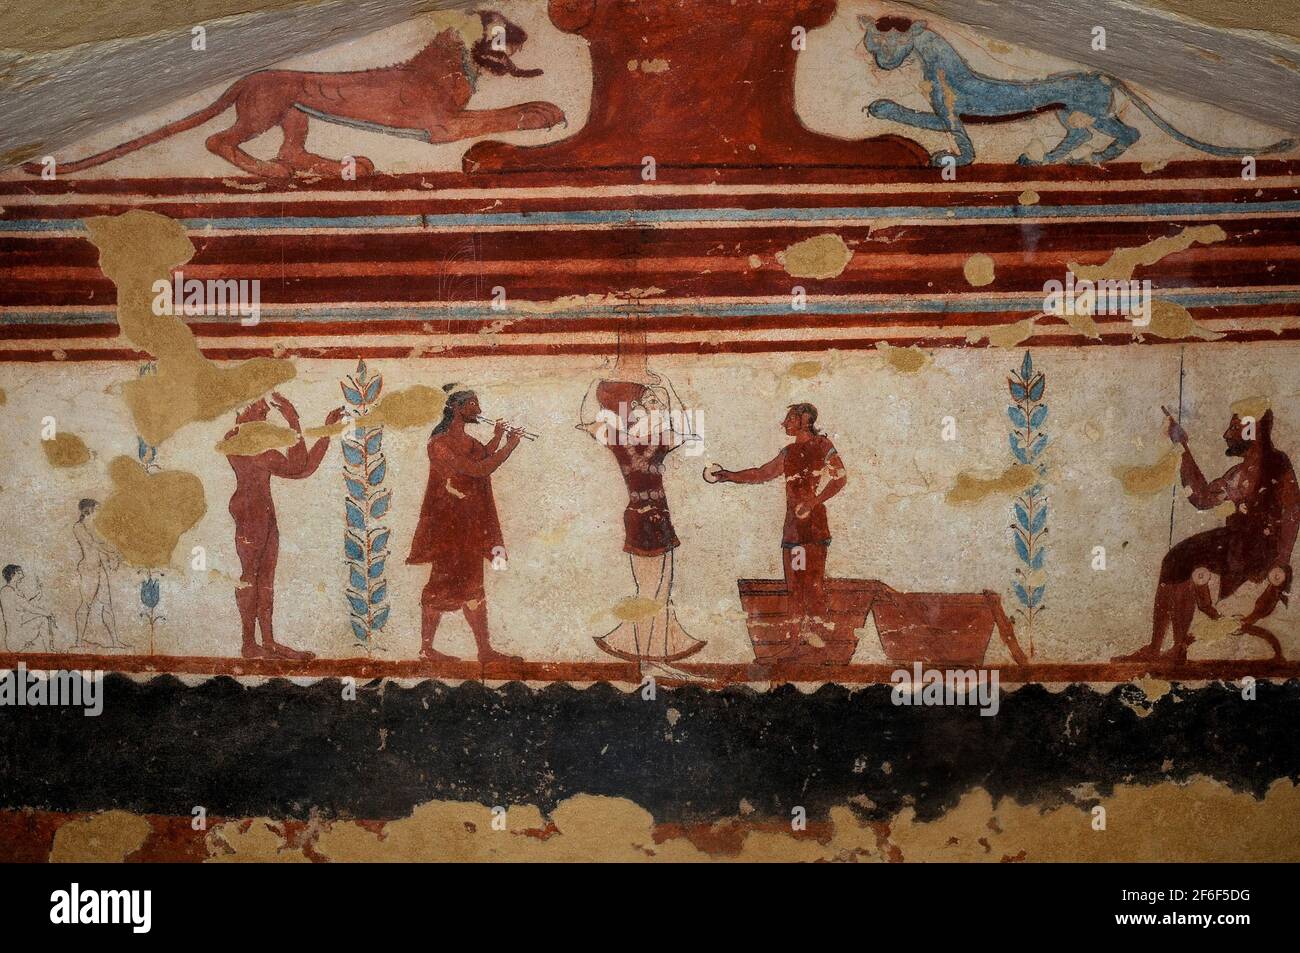 Etruskische Entertainer: Ein männlicher Jongleur, eine akrobatin und ein Musiker, der zwei Flöten spielt. Wandmalerei in einem 2.500 Jahre alten etruskischen Grab, dem Jugglergrab oder Tomba dei Giocolieri, in der Nekropole Monterozzi der antiken Stadt Tarchuna oder Tarchna, heute Tarquinia, Latium, Italien. Der Jongleur hält zwei Scheiben, während er vor zwei Körben steht, während die akrobatin einen schwer aussehenden Kerzenleuchter auf ihrem Kopf ausbalanciert. Stockfoto